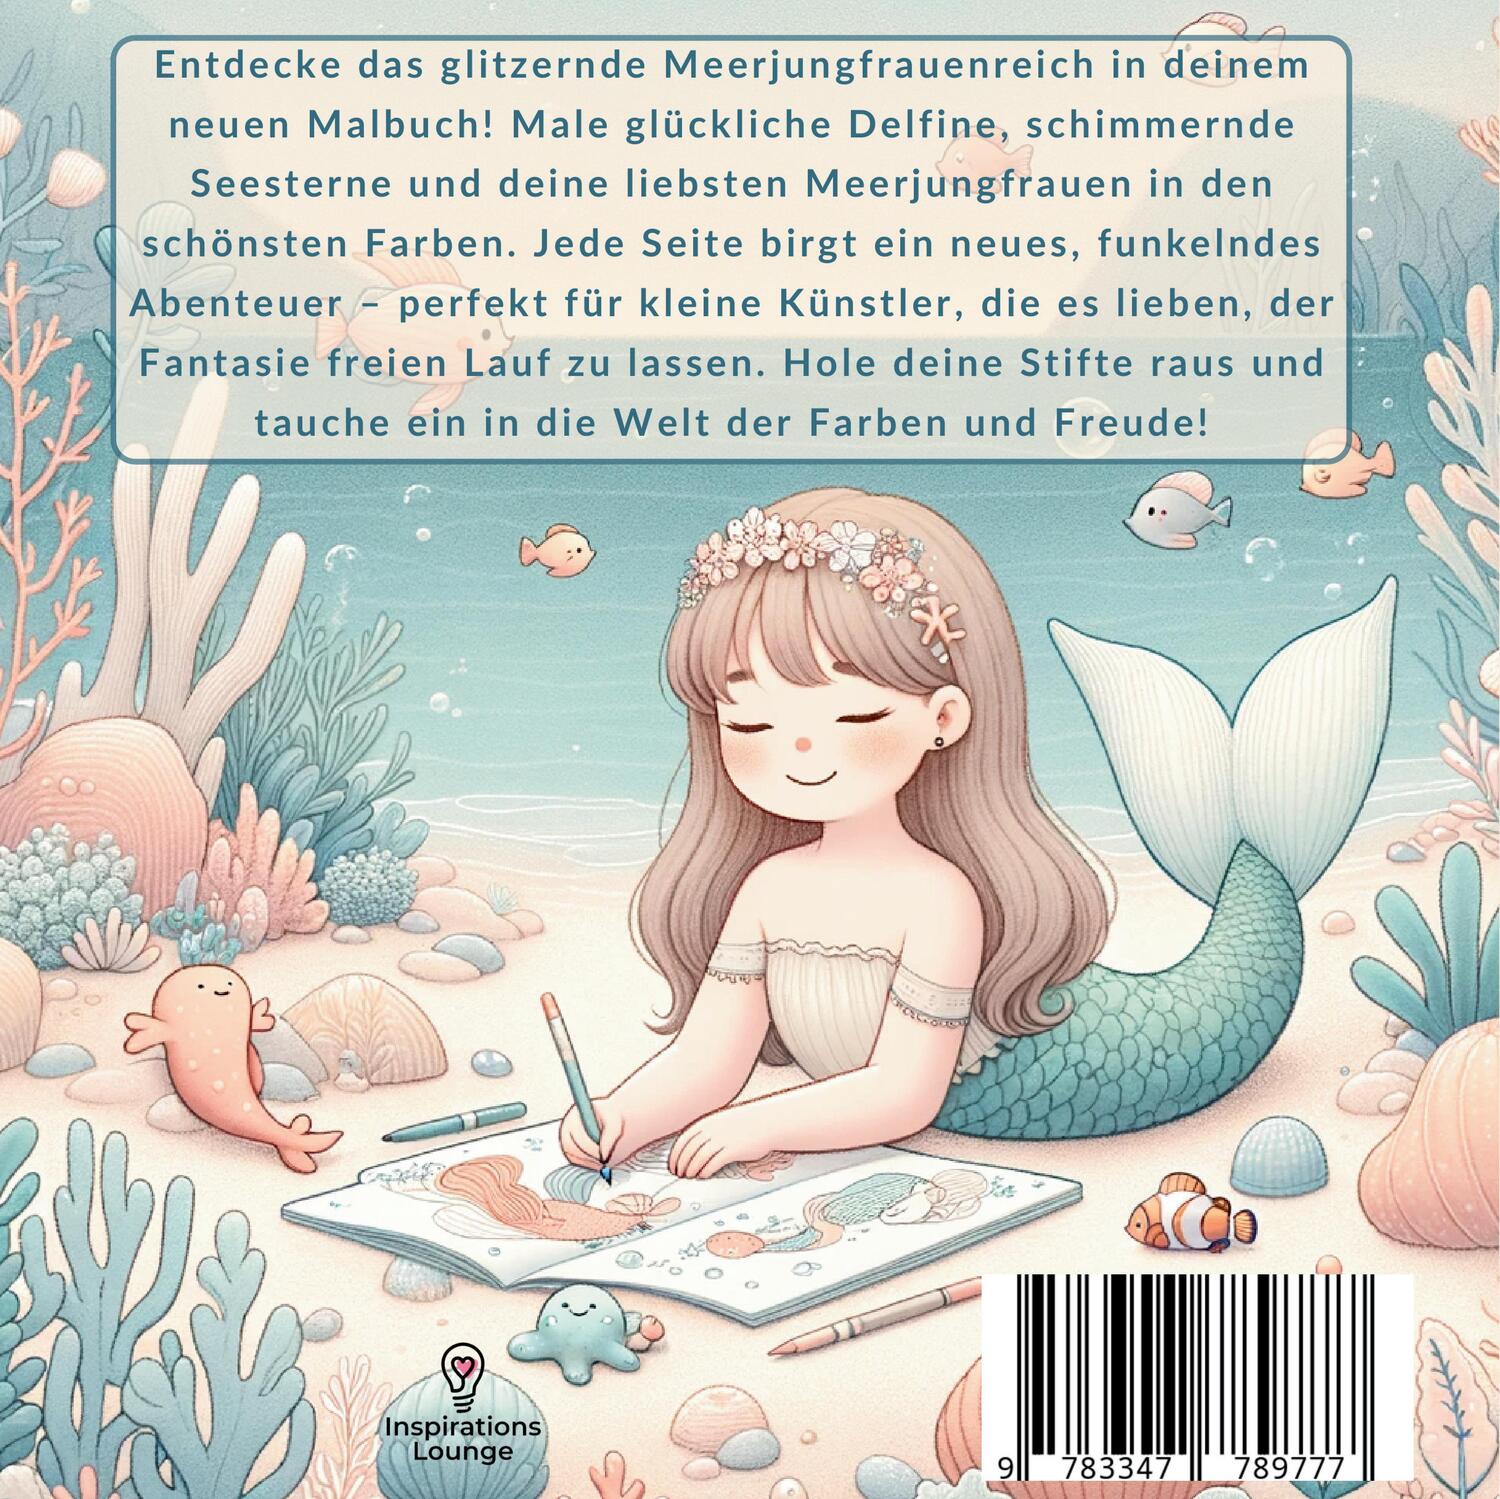 Rückseite: 9783347789777 | Malbuch Meerjungfrau - Mein zauberhaftes Ausmalbuch | Collection